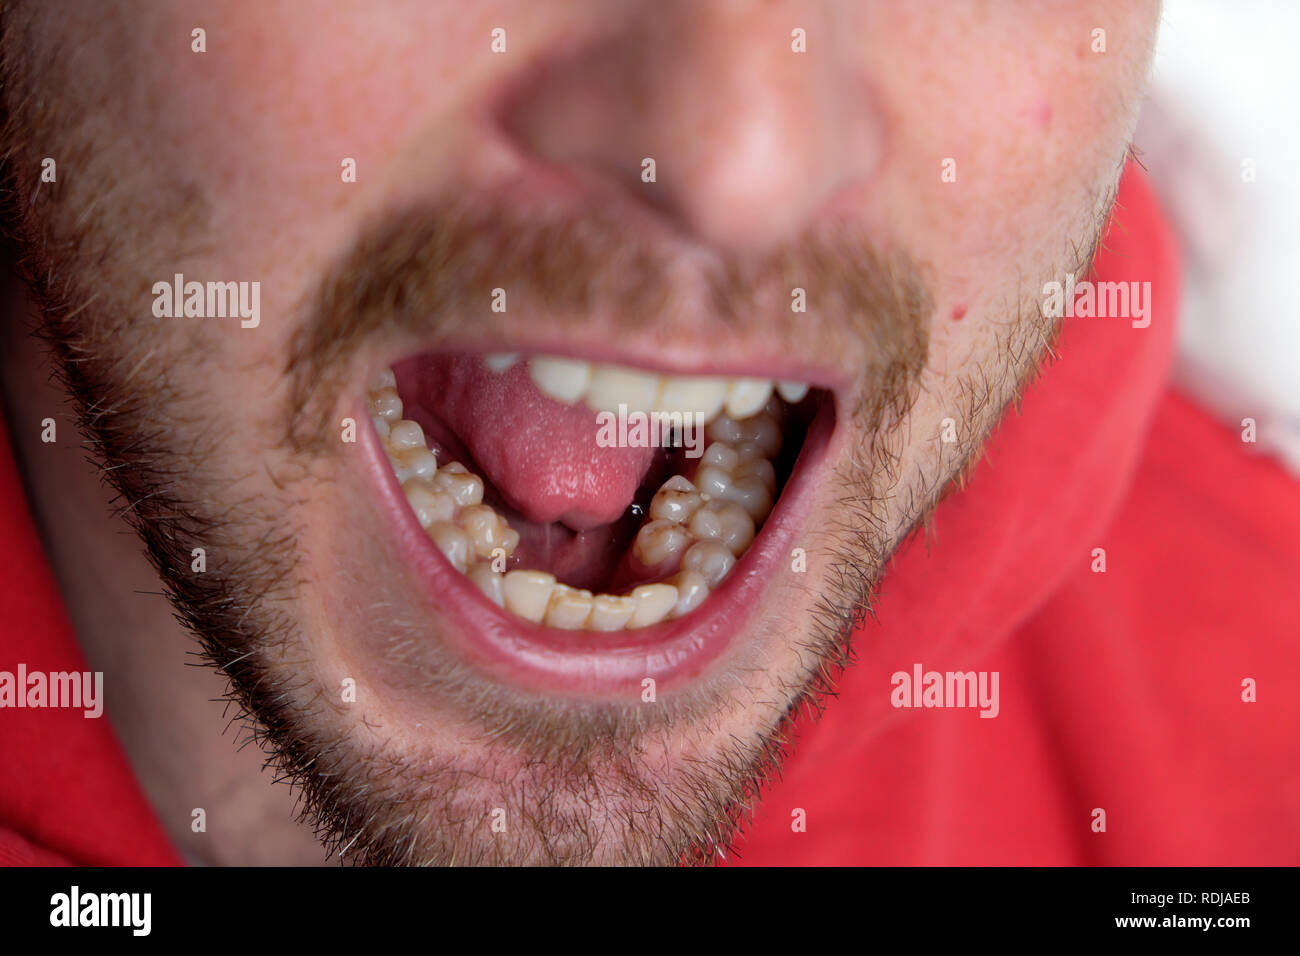 Ein junger Mann mit offenen Mund zeigt seine extra set molaren Prämolaren Statisten prämolar Zähne in Wales UK KATHY DEWITT Stockfoto